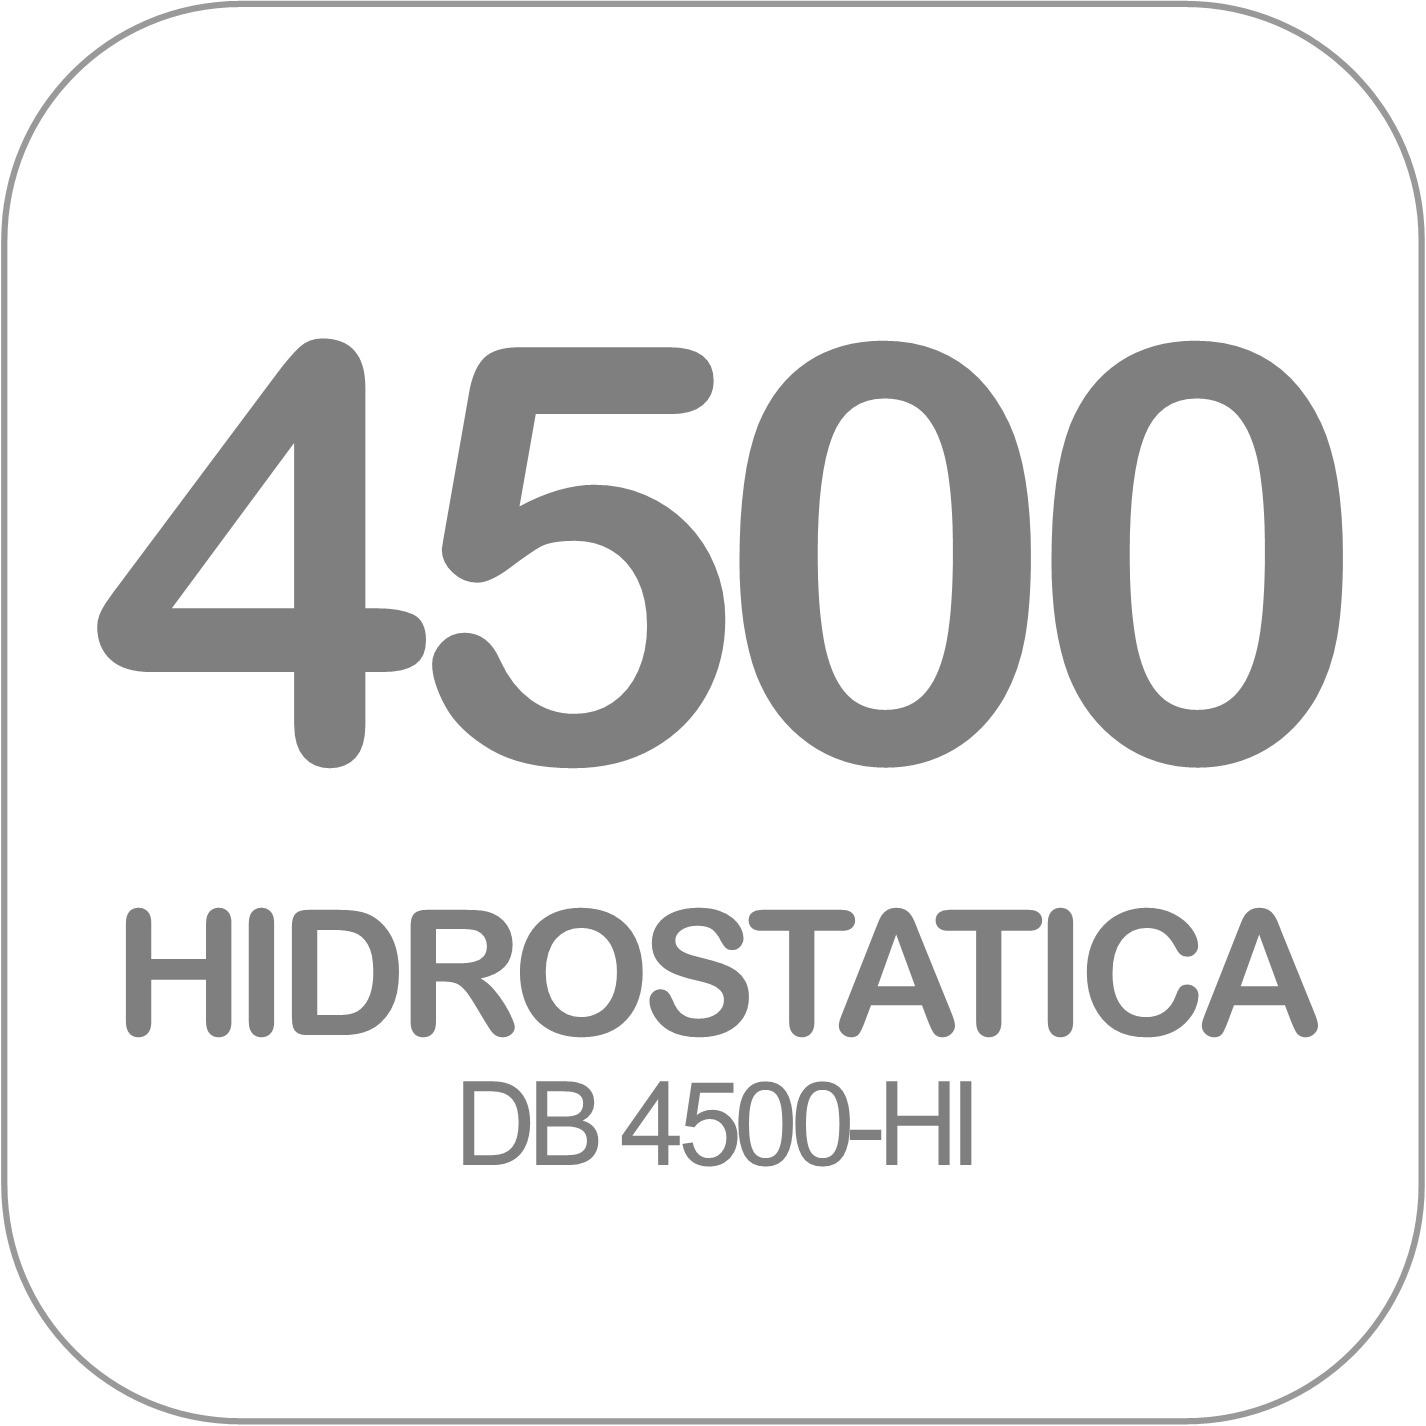 Autohormigonera DB 4500-HI